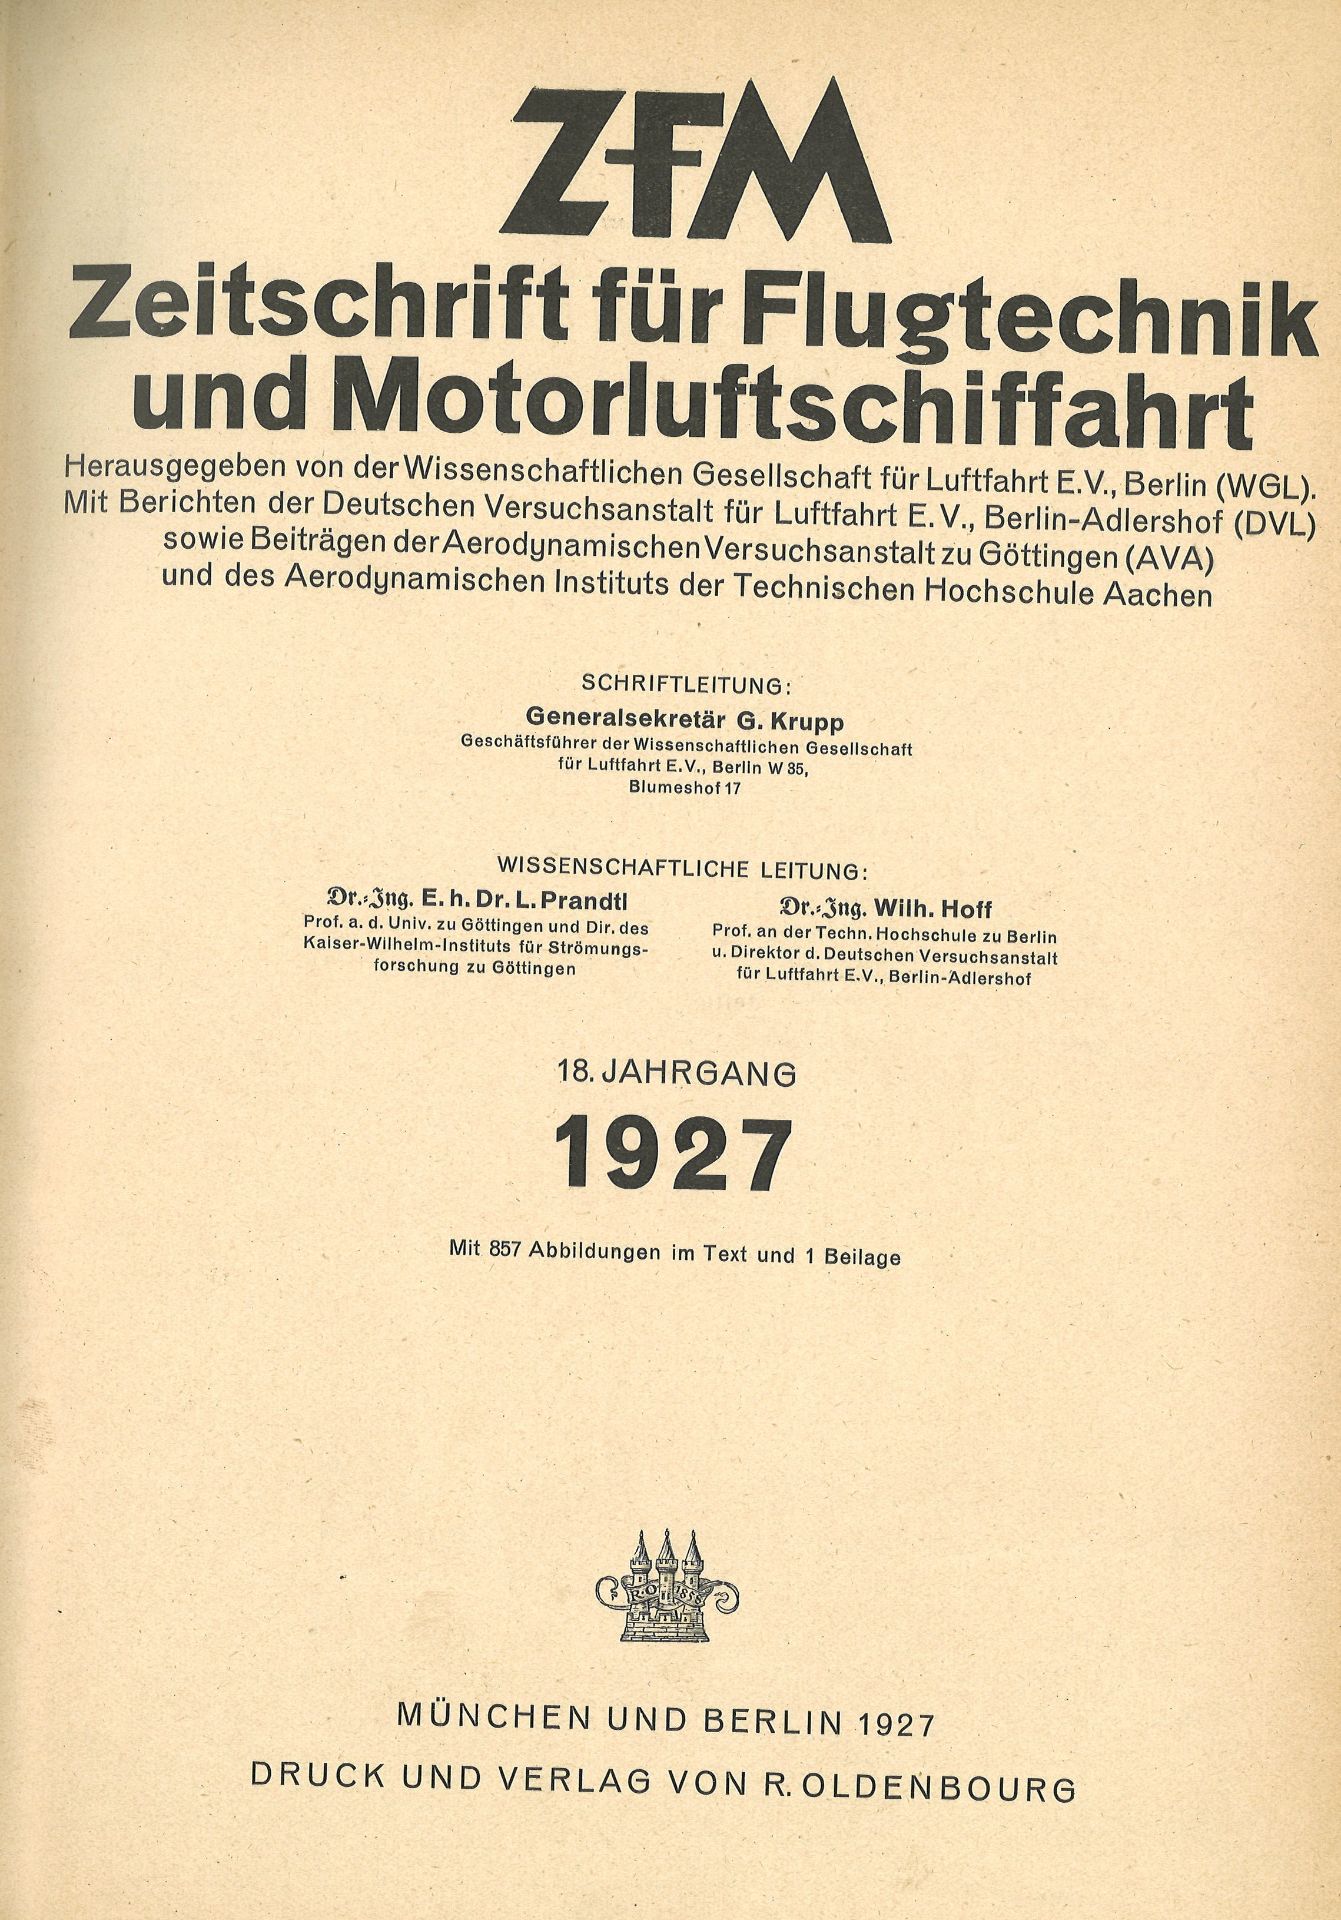 Zeitschrift für Lufttechnik und Motorluftschifffahrt, gebundener kompletter Jahrgang 1927, 576